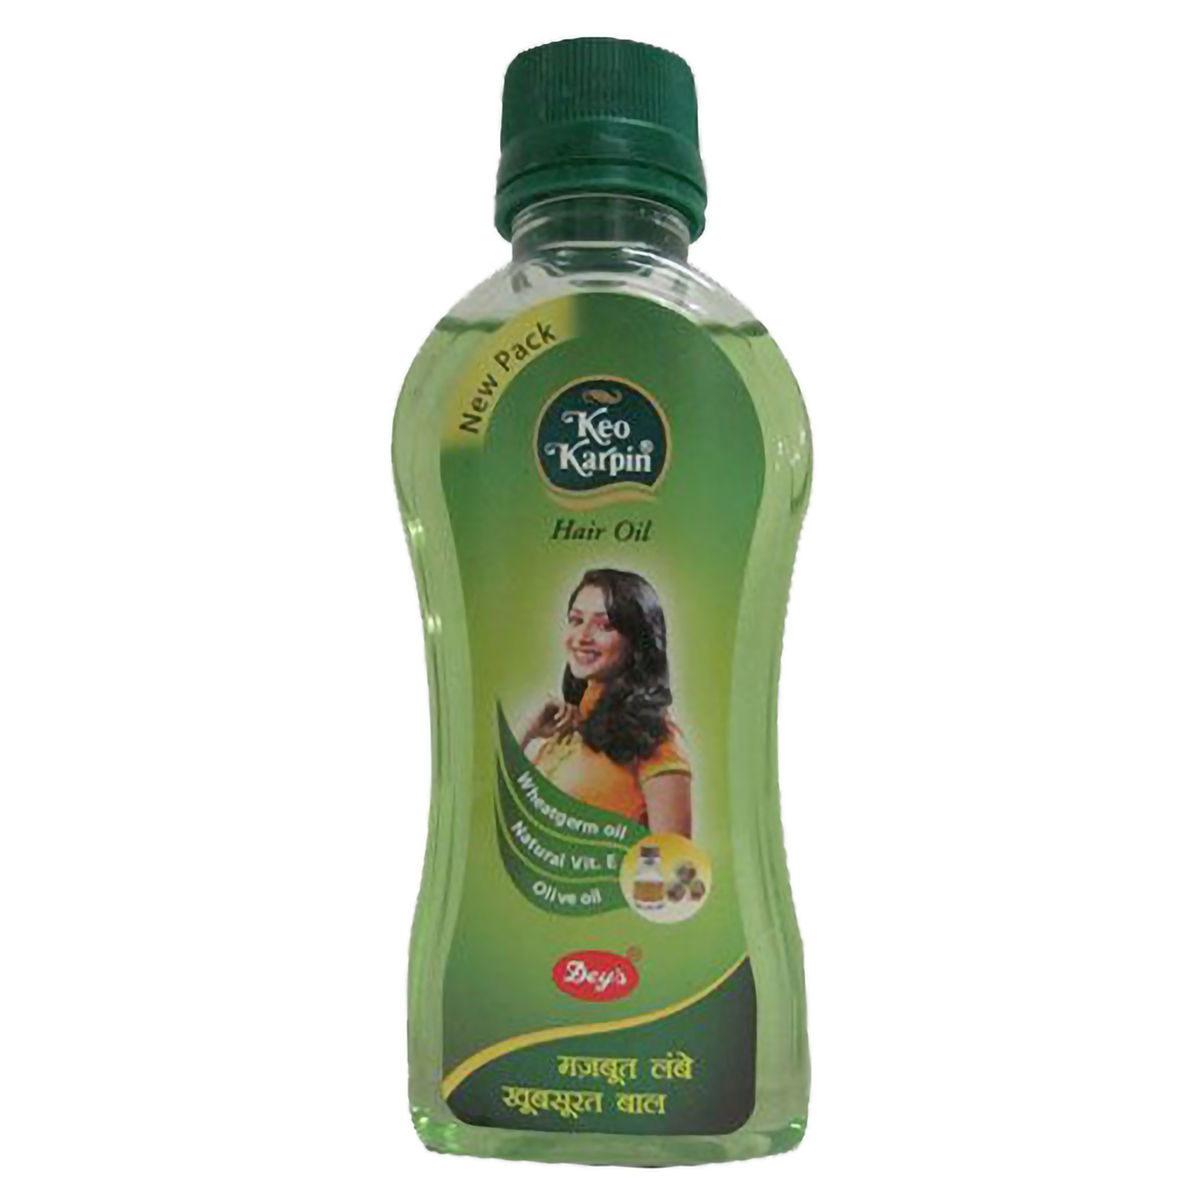 Buy Keo Karpin Herbal Hair Oil, 200 ml Online